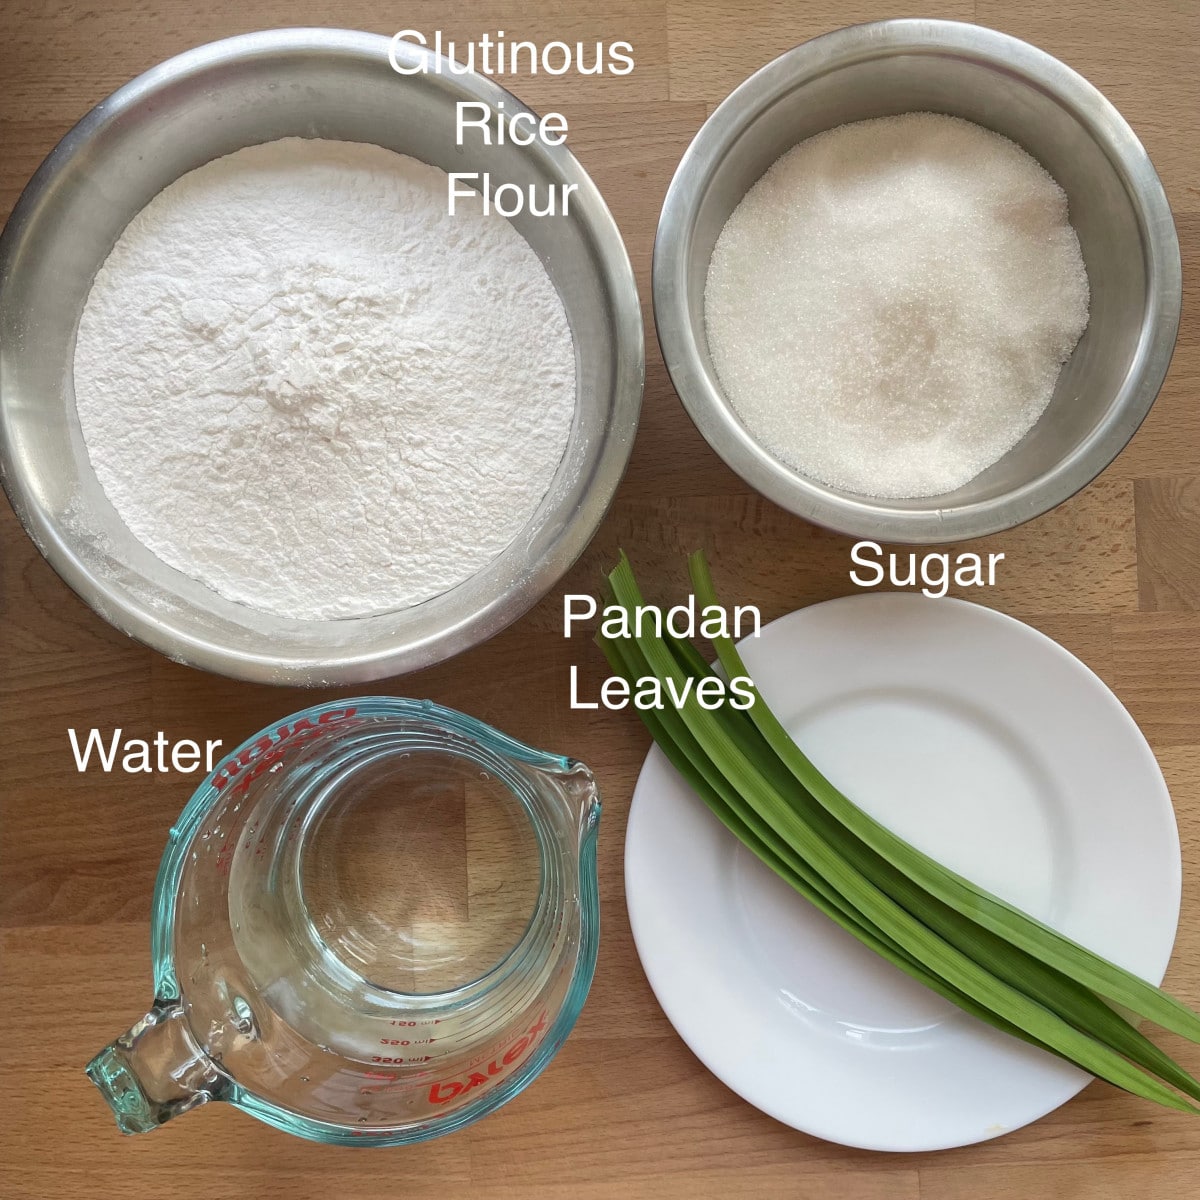 Ingredients to make glutinous rice batter.